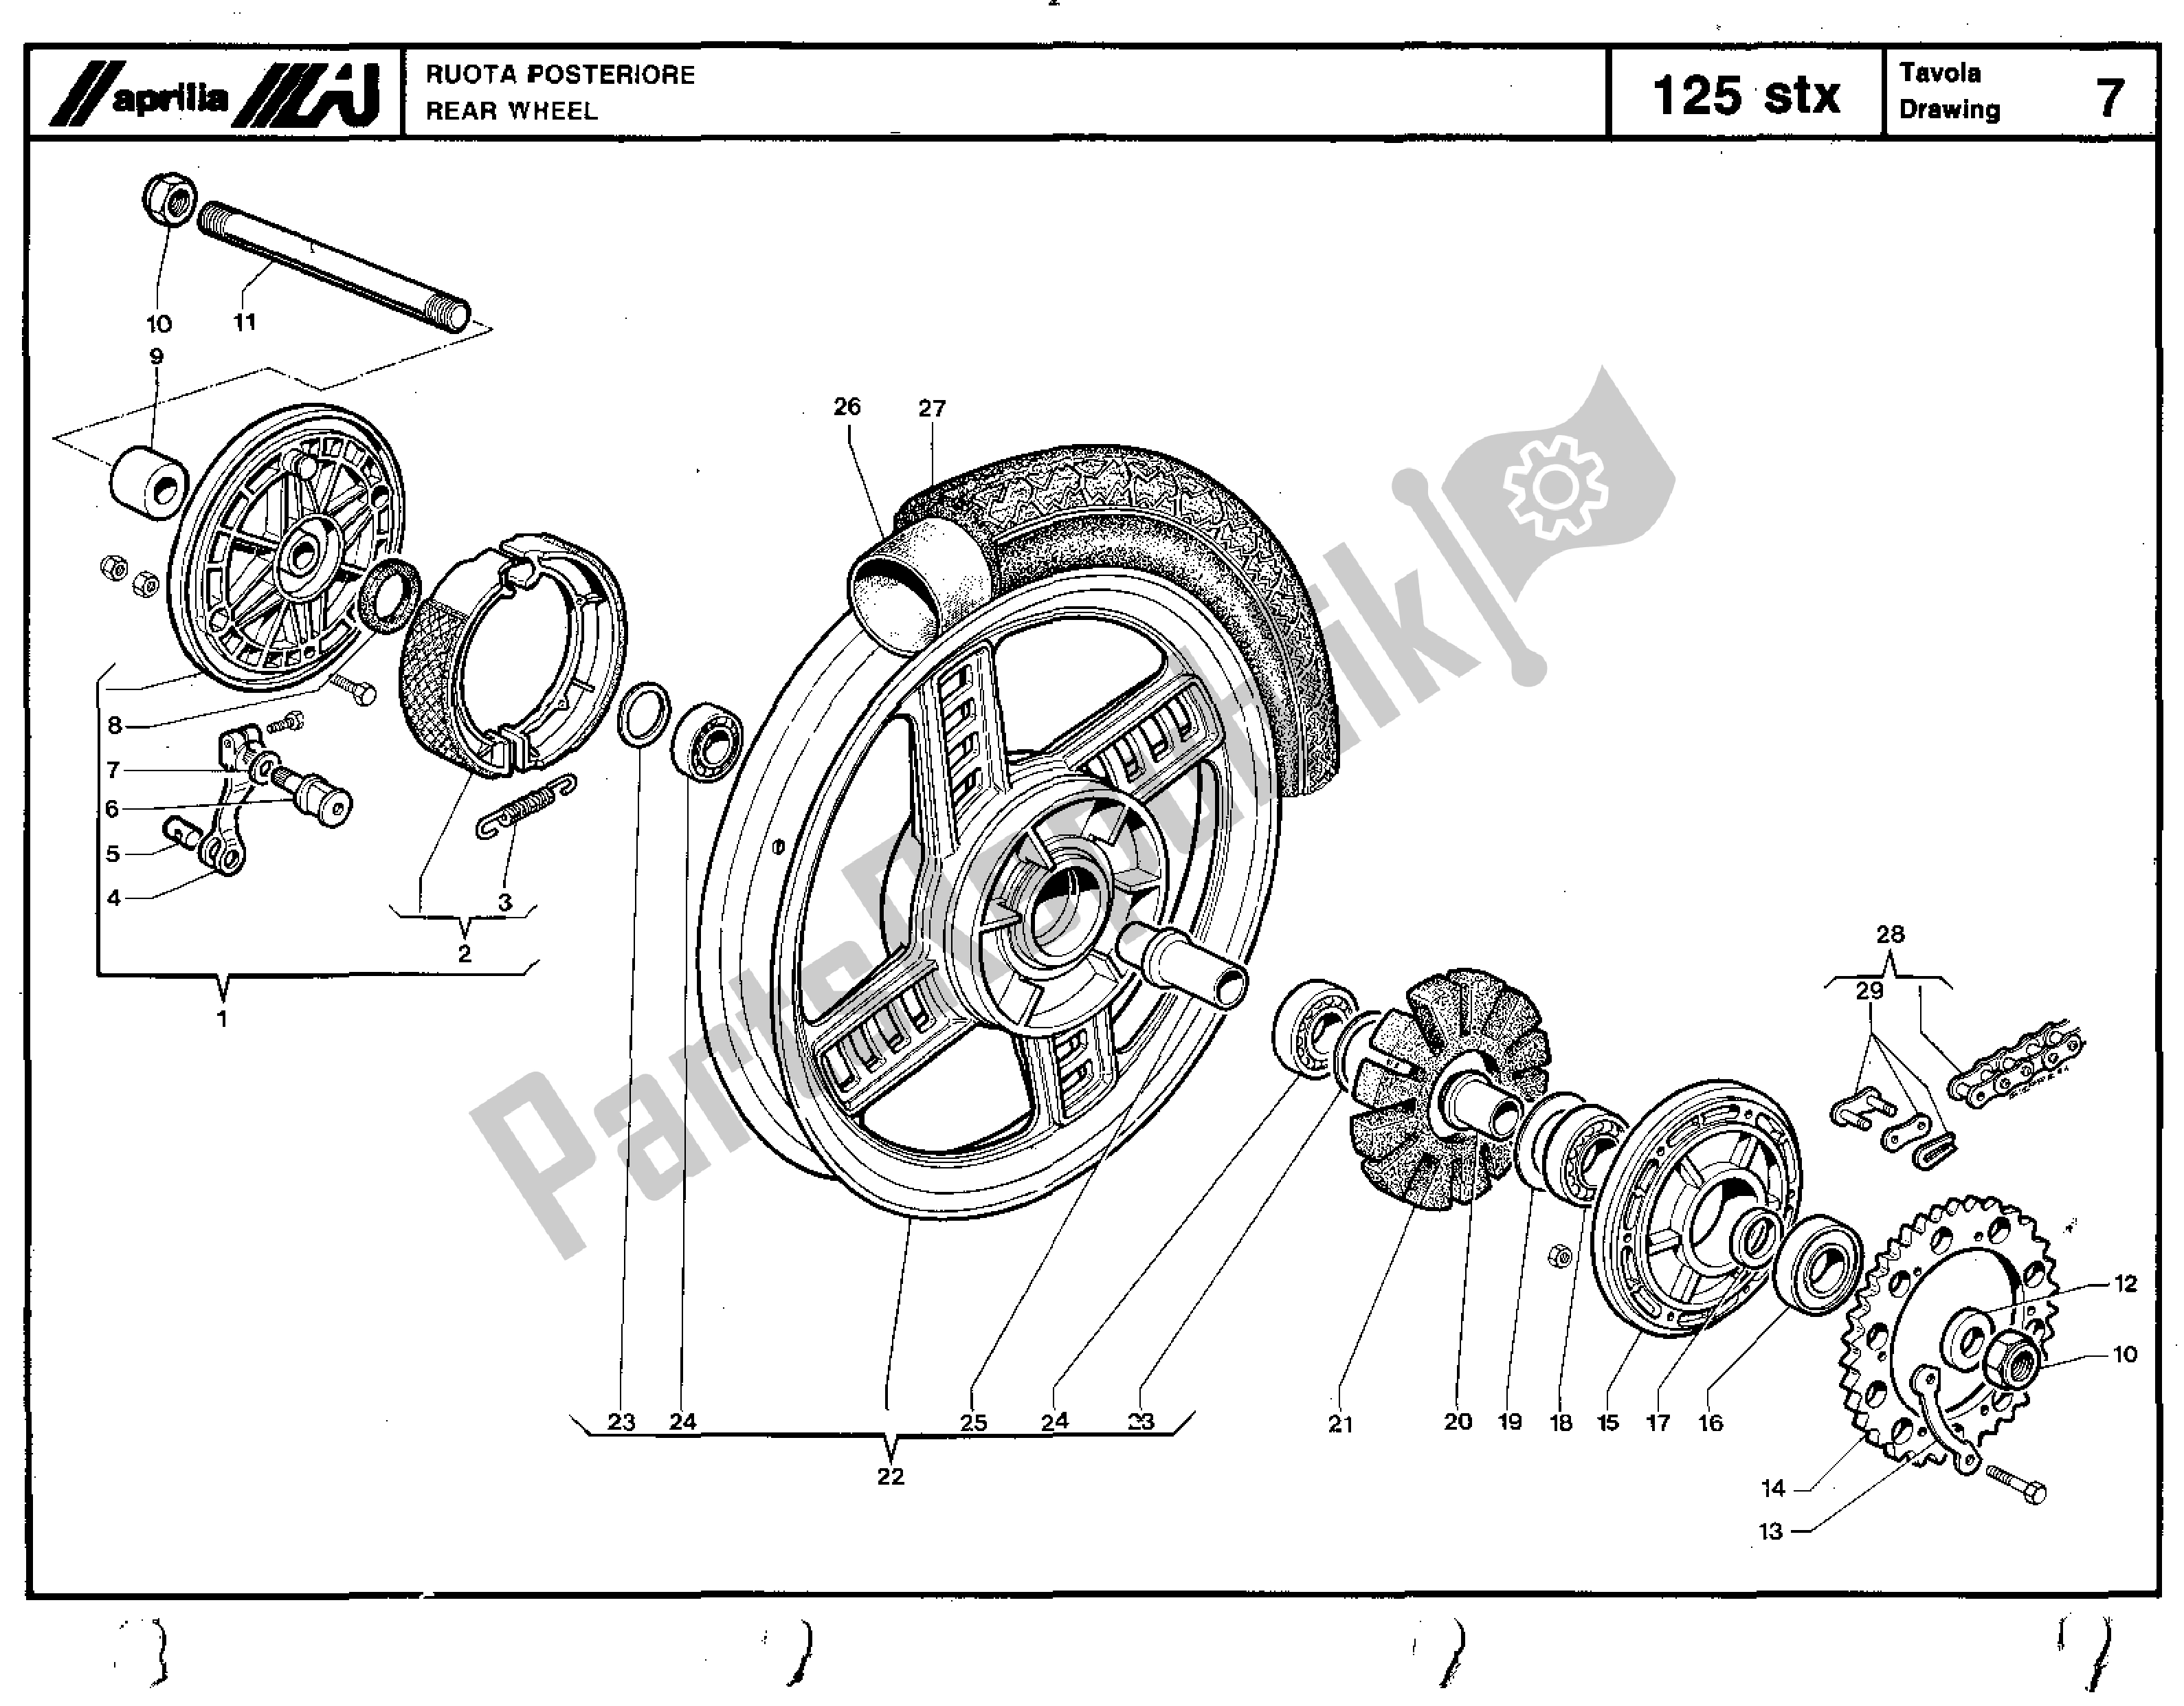 Todas las partes para Rear Wheel de Aprilia STX 125 1984 - 1986